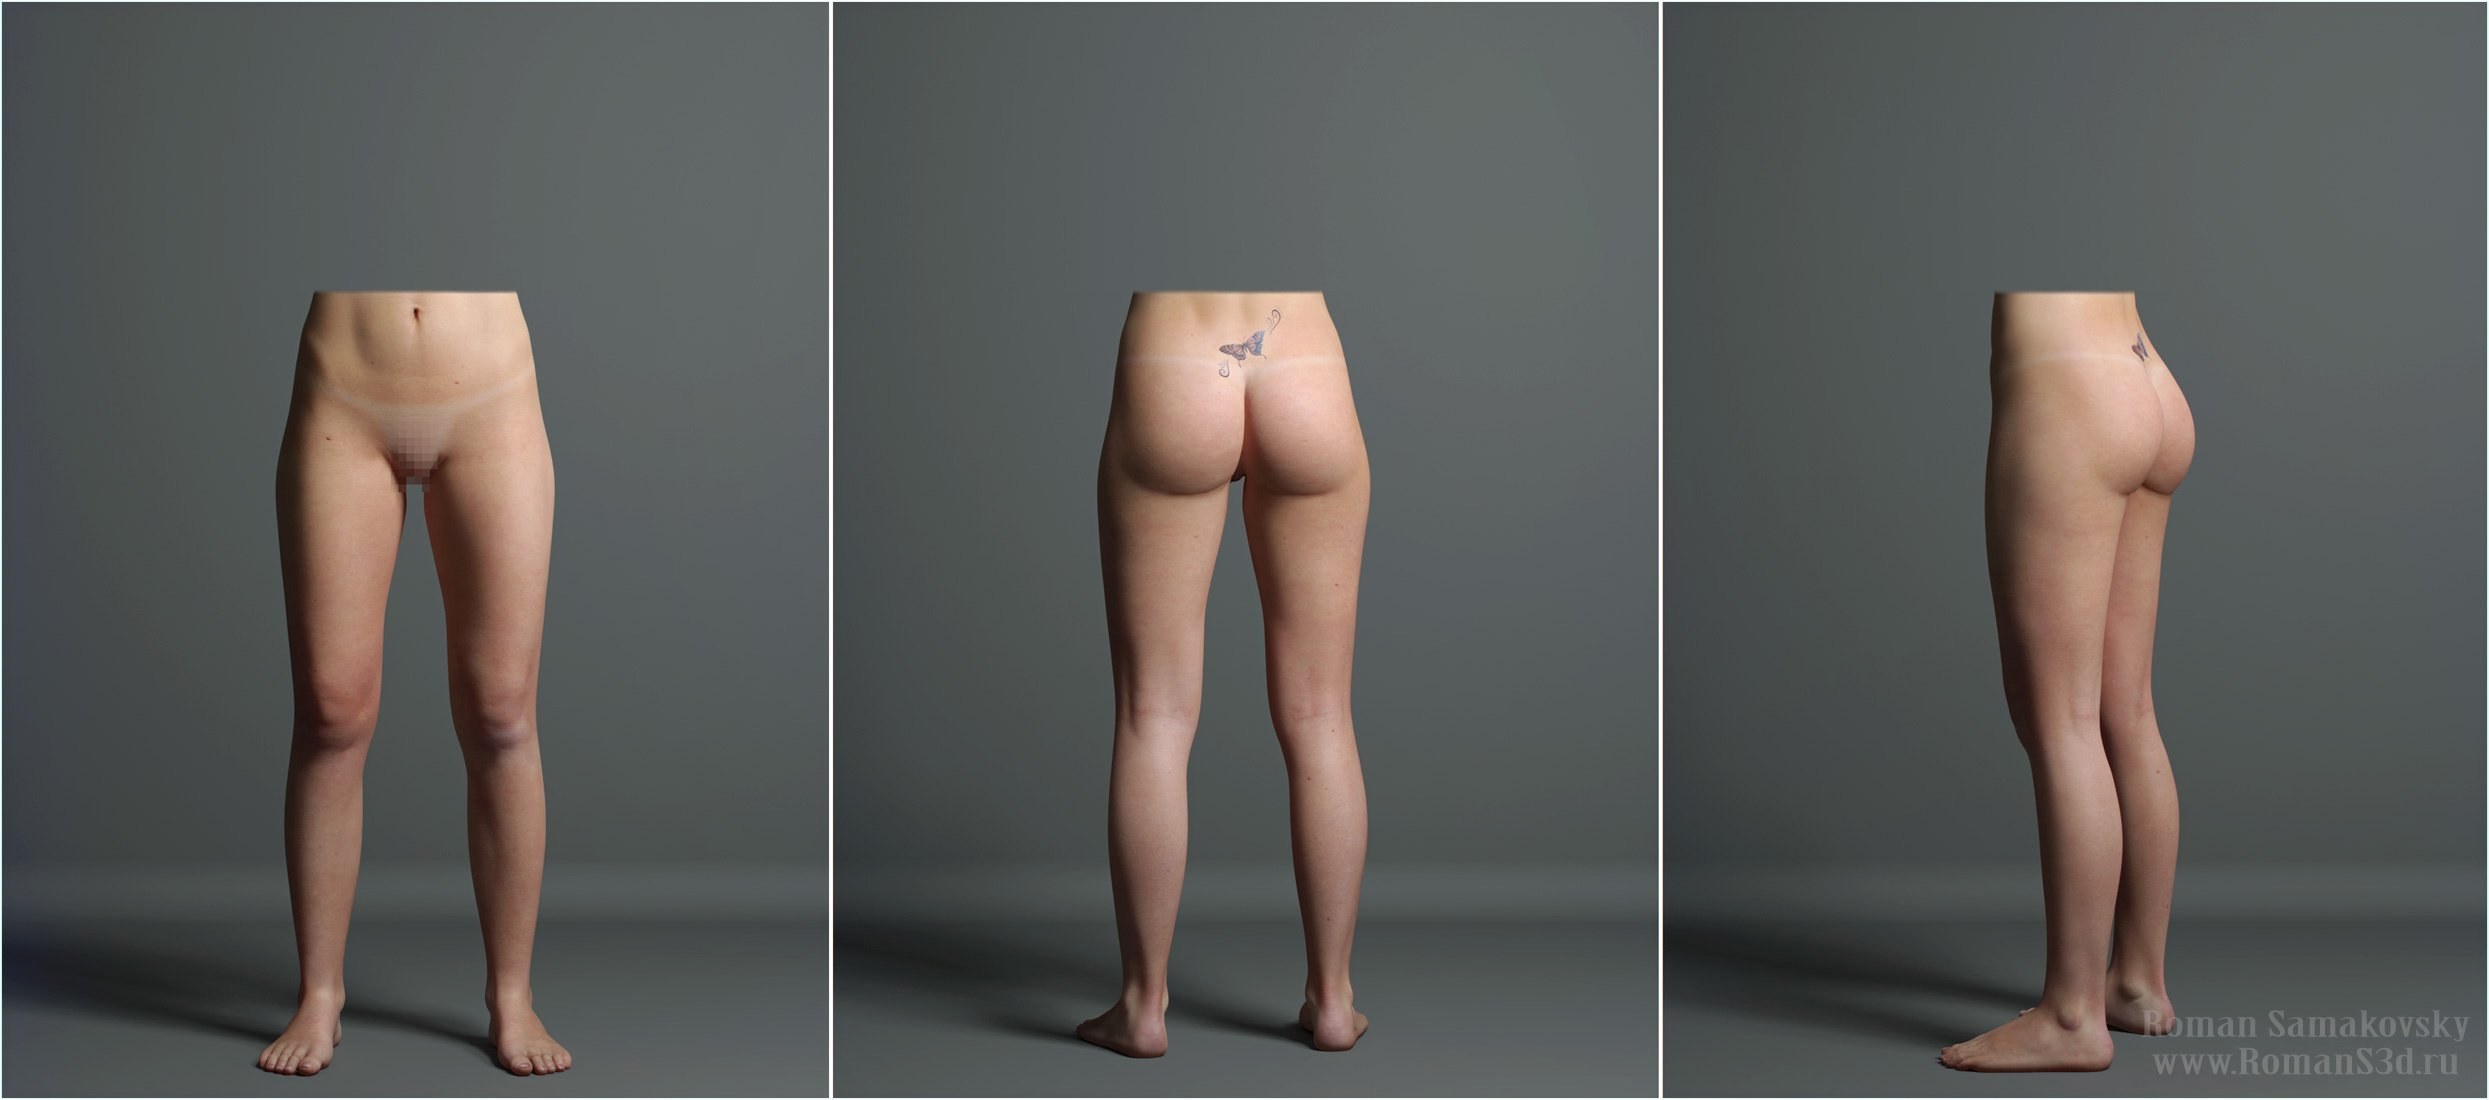 Голые девки с кривыми ногами - порно фото и картинки hotbaba.xyz